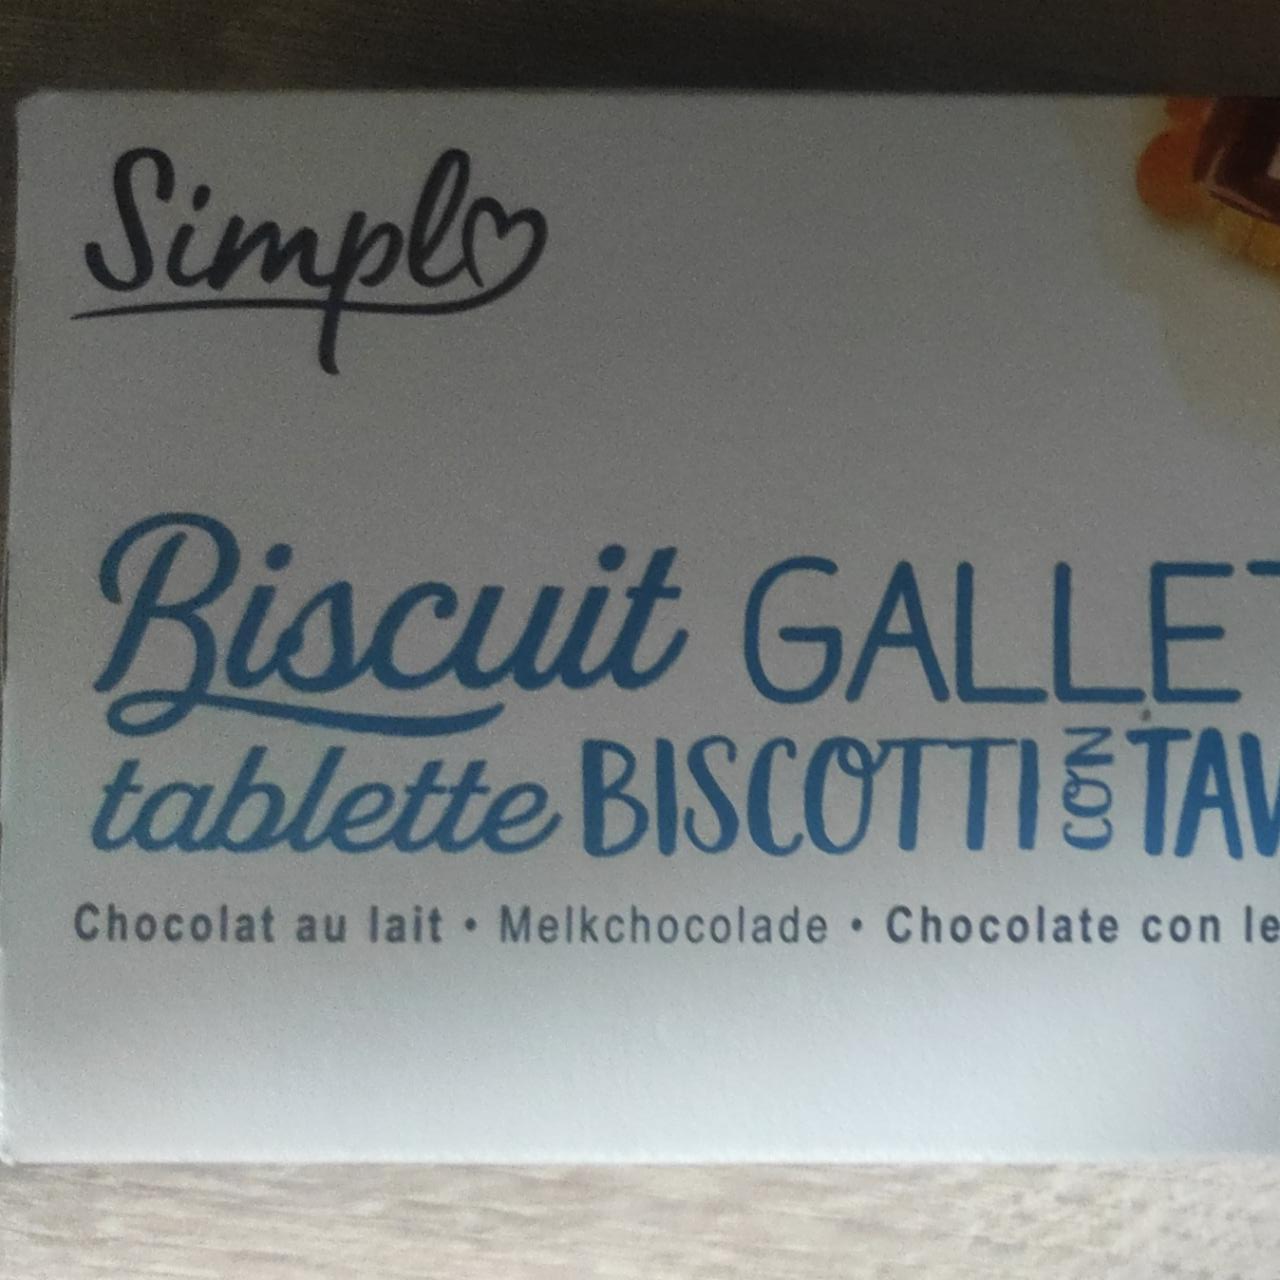 Fotografie - Biscuit galleta Chocolat au lait Simpl